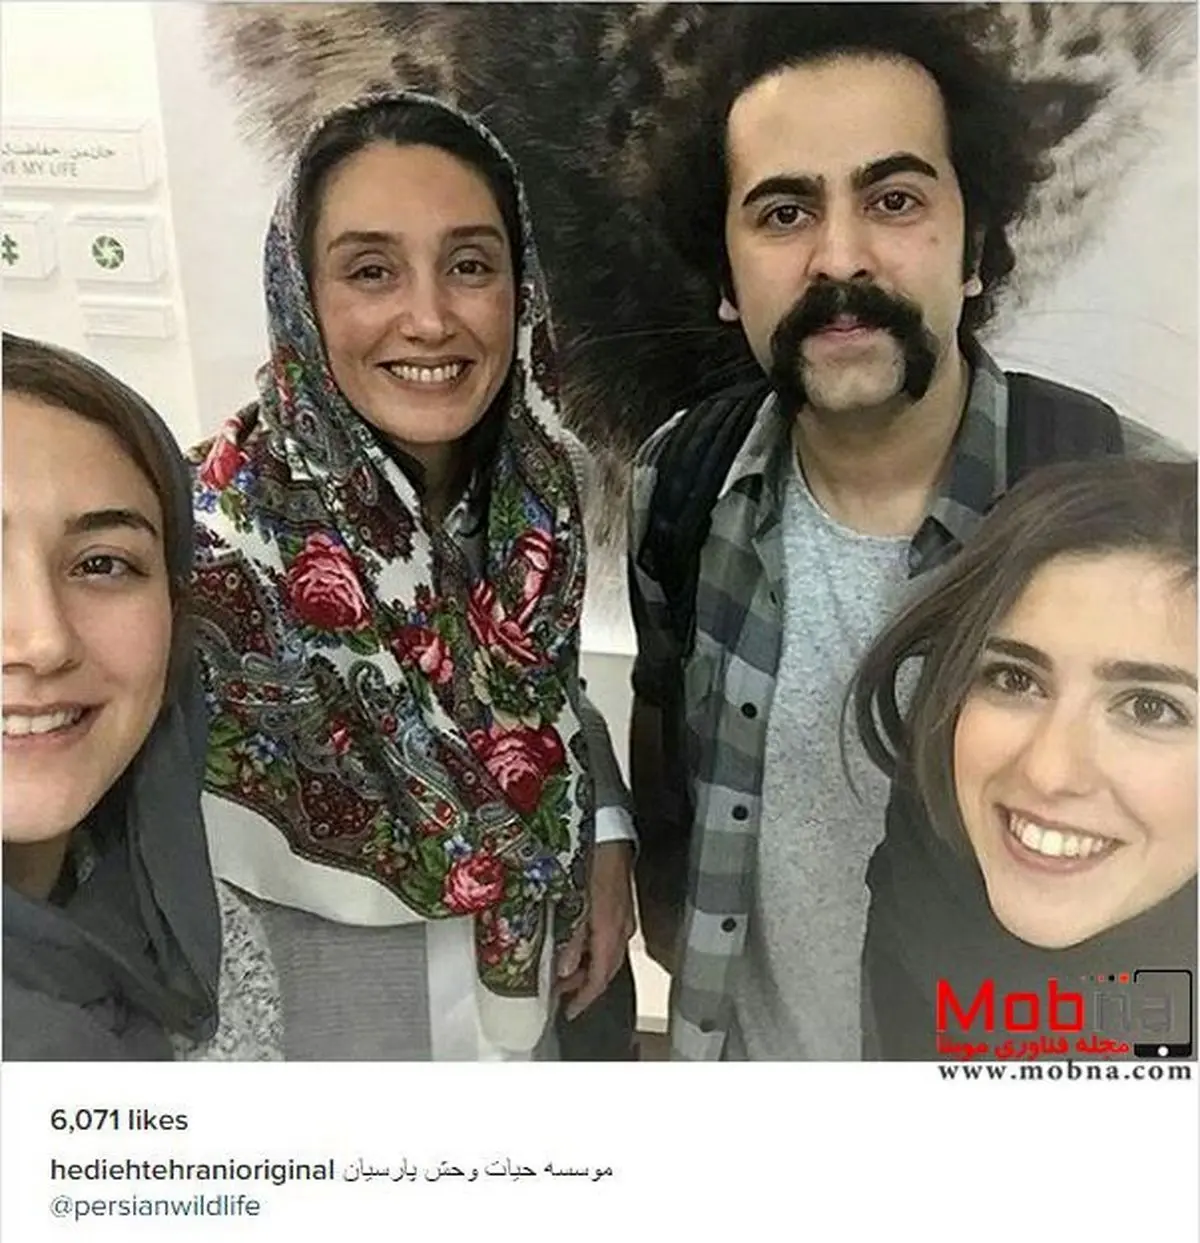 سلفی هدیه تهرانی و دوستانش در موسسه حیات وحش پارسیان (عکس)